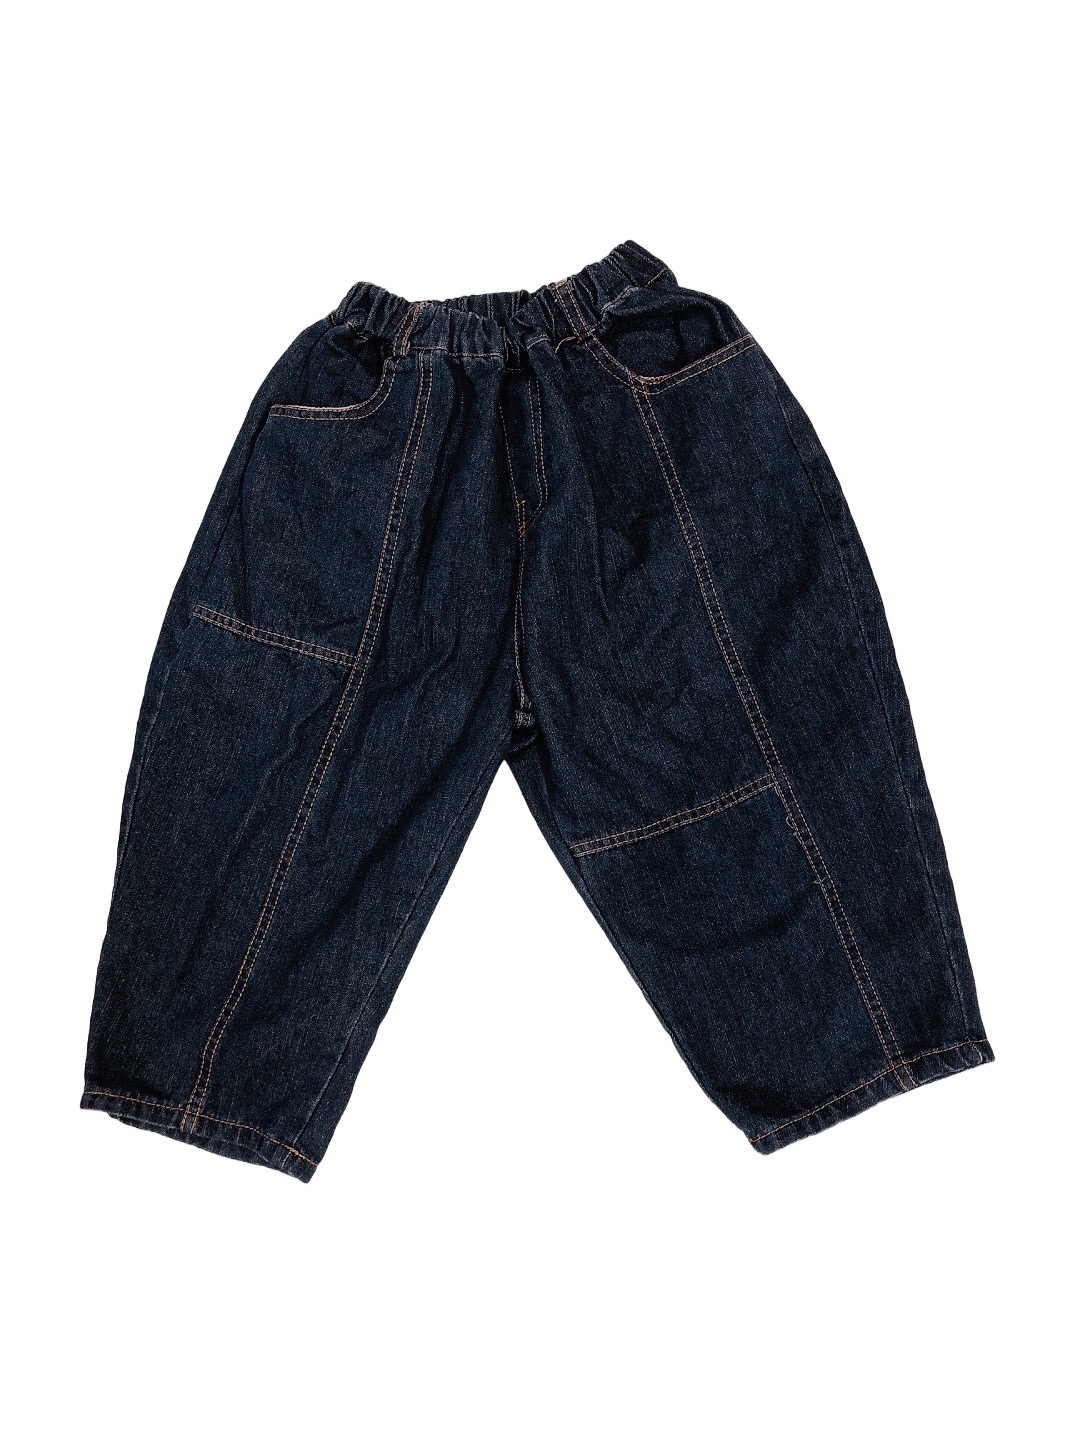 藍色牛仔兒童闊腿褲(120)
NT$79